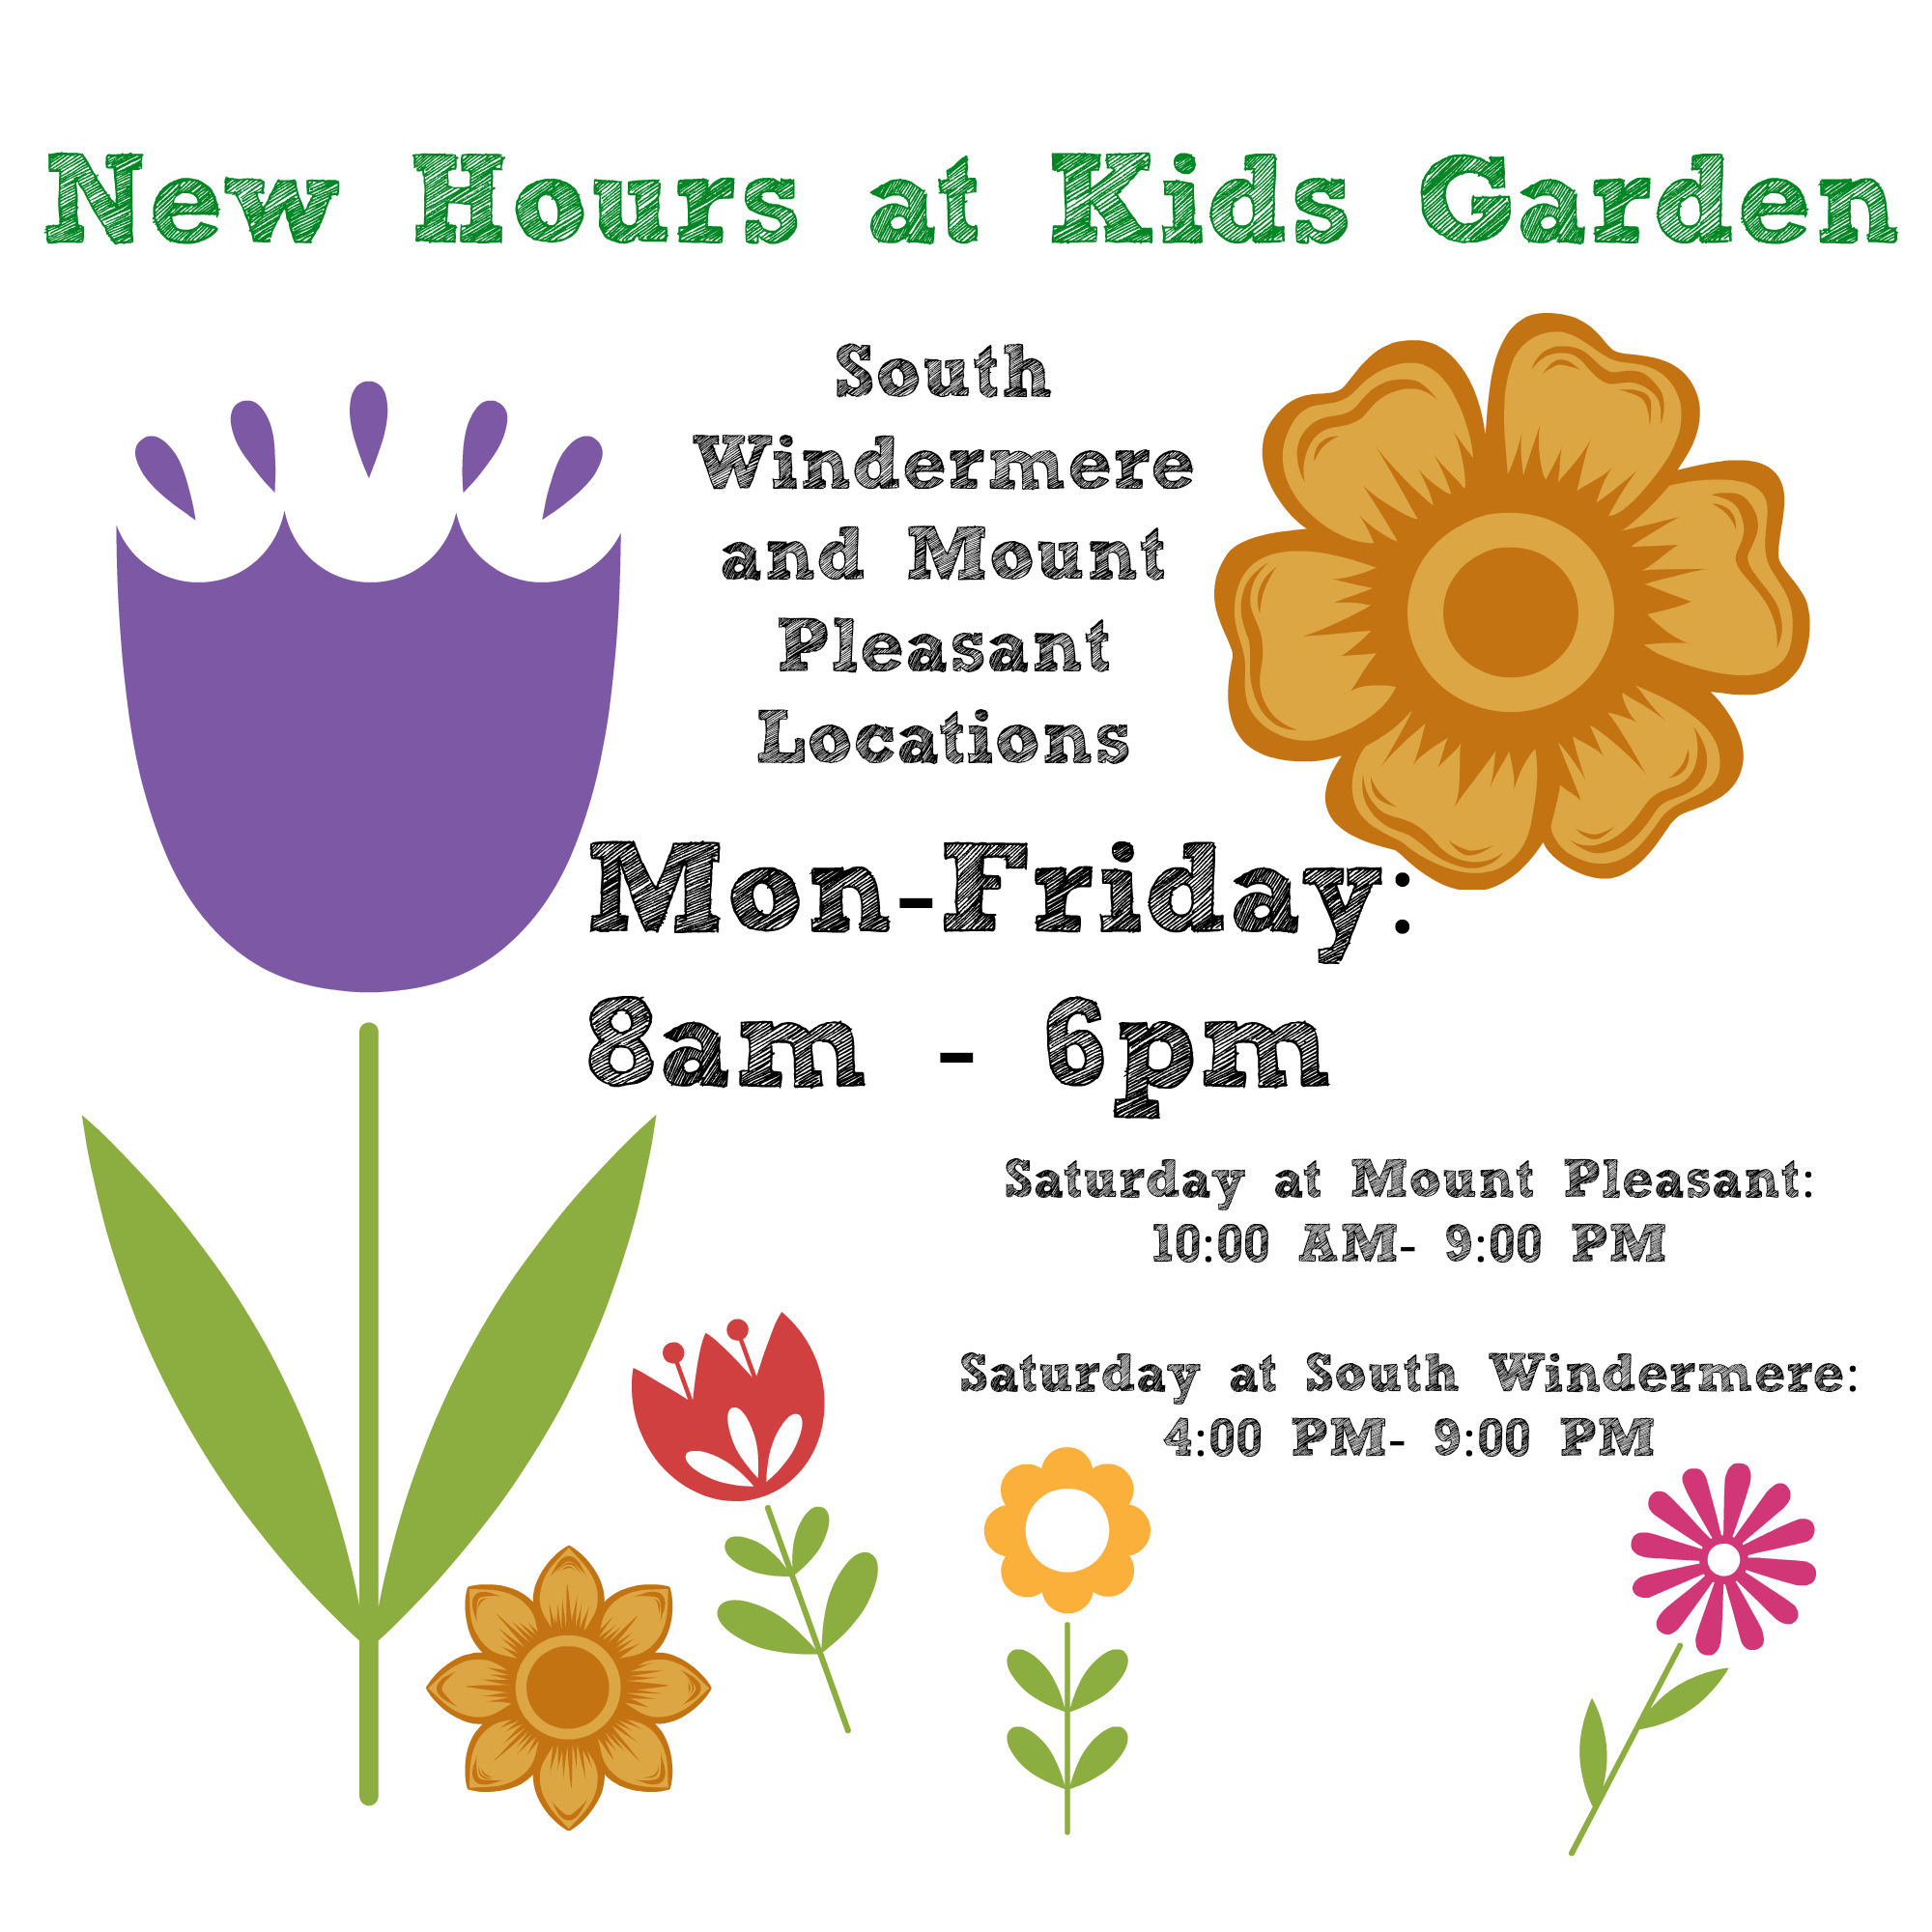 The new schedule at Kids Garden Charleston.